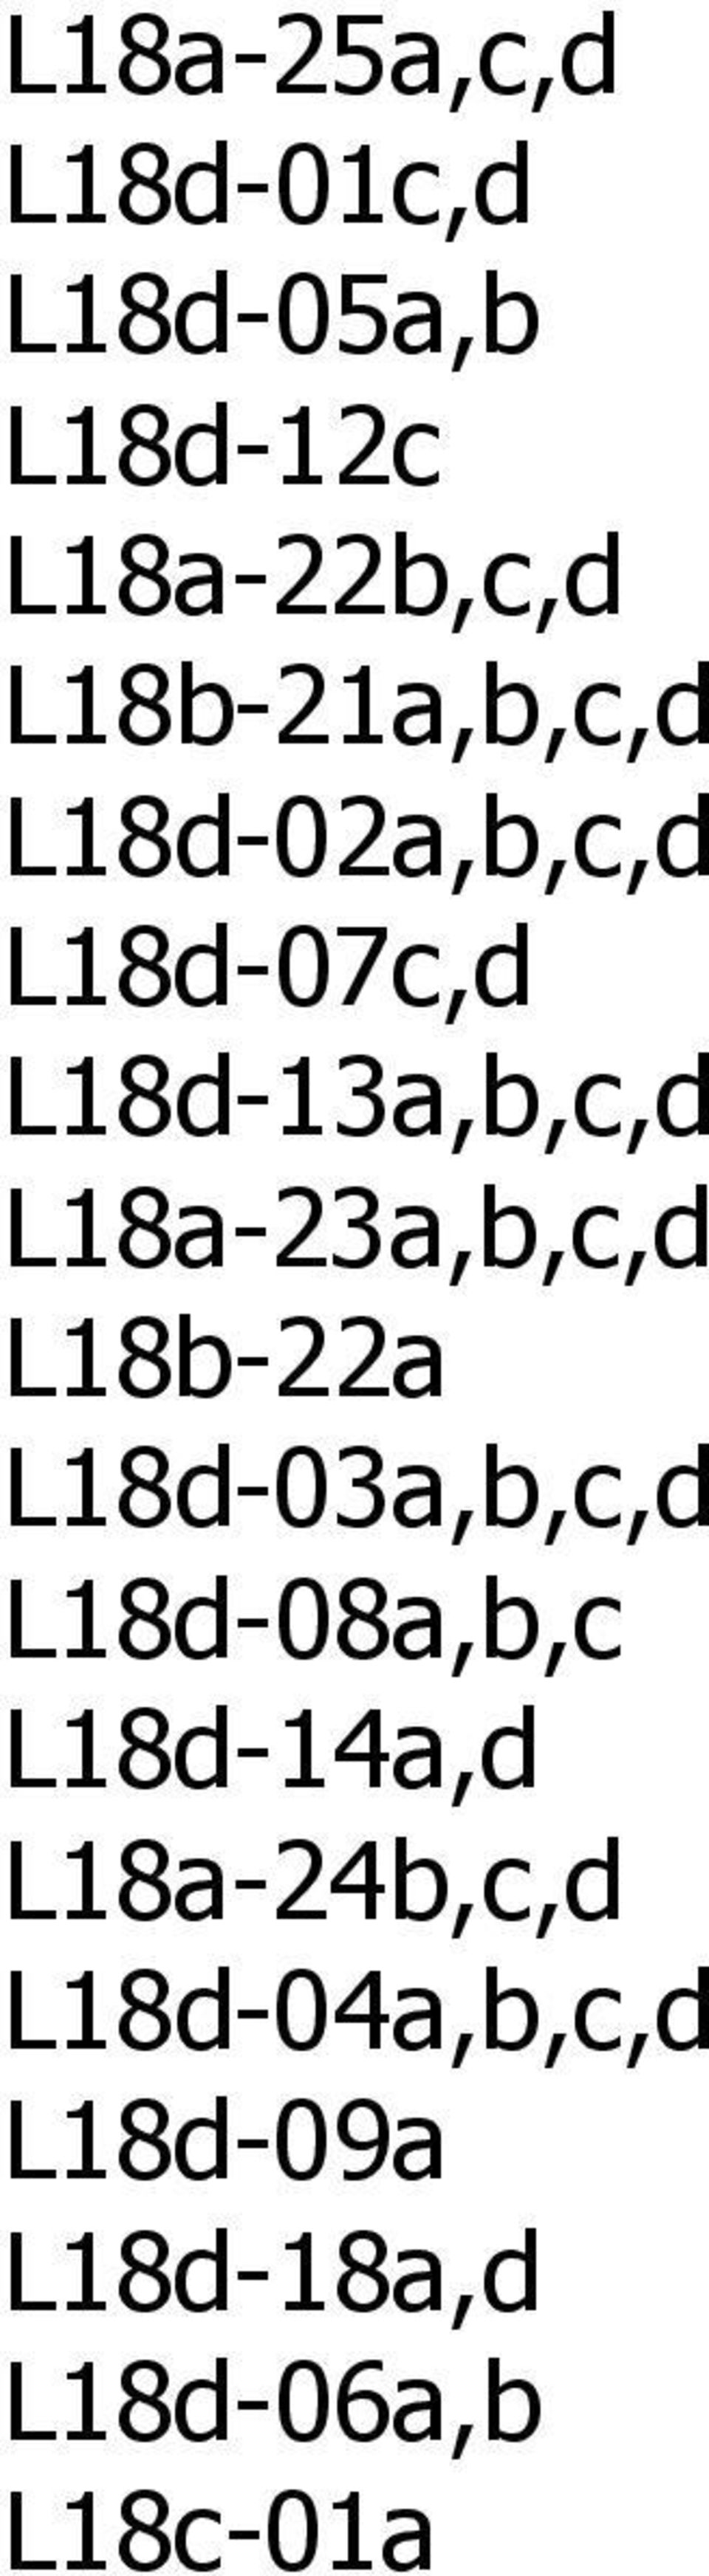 L18a-23a,b,c,d L18b-22a L18d-03a,b,c,d L18d-08a,b,c